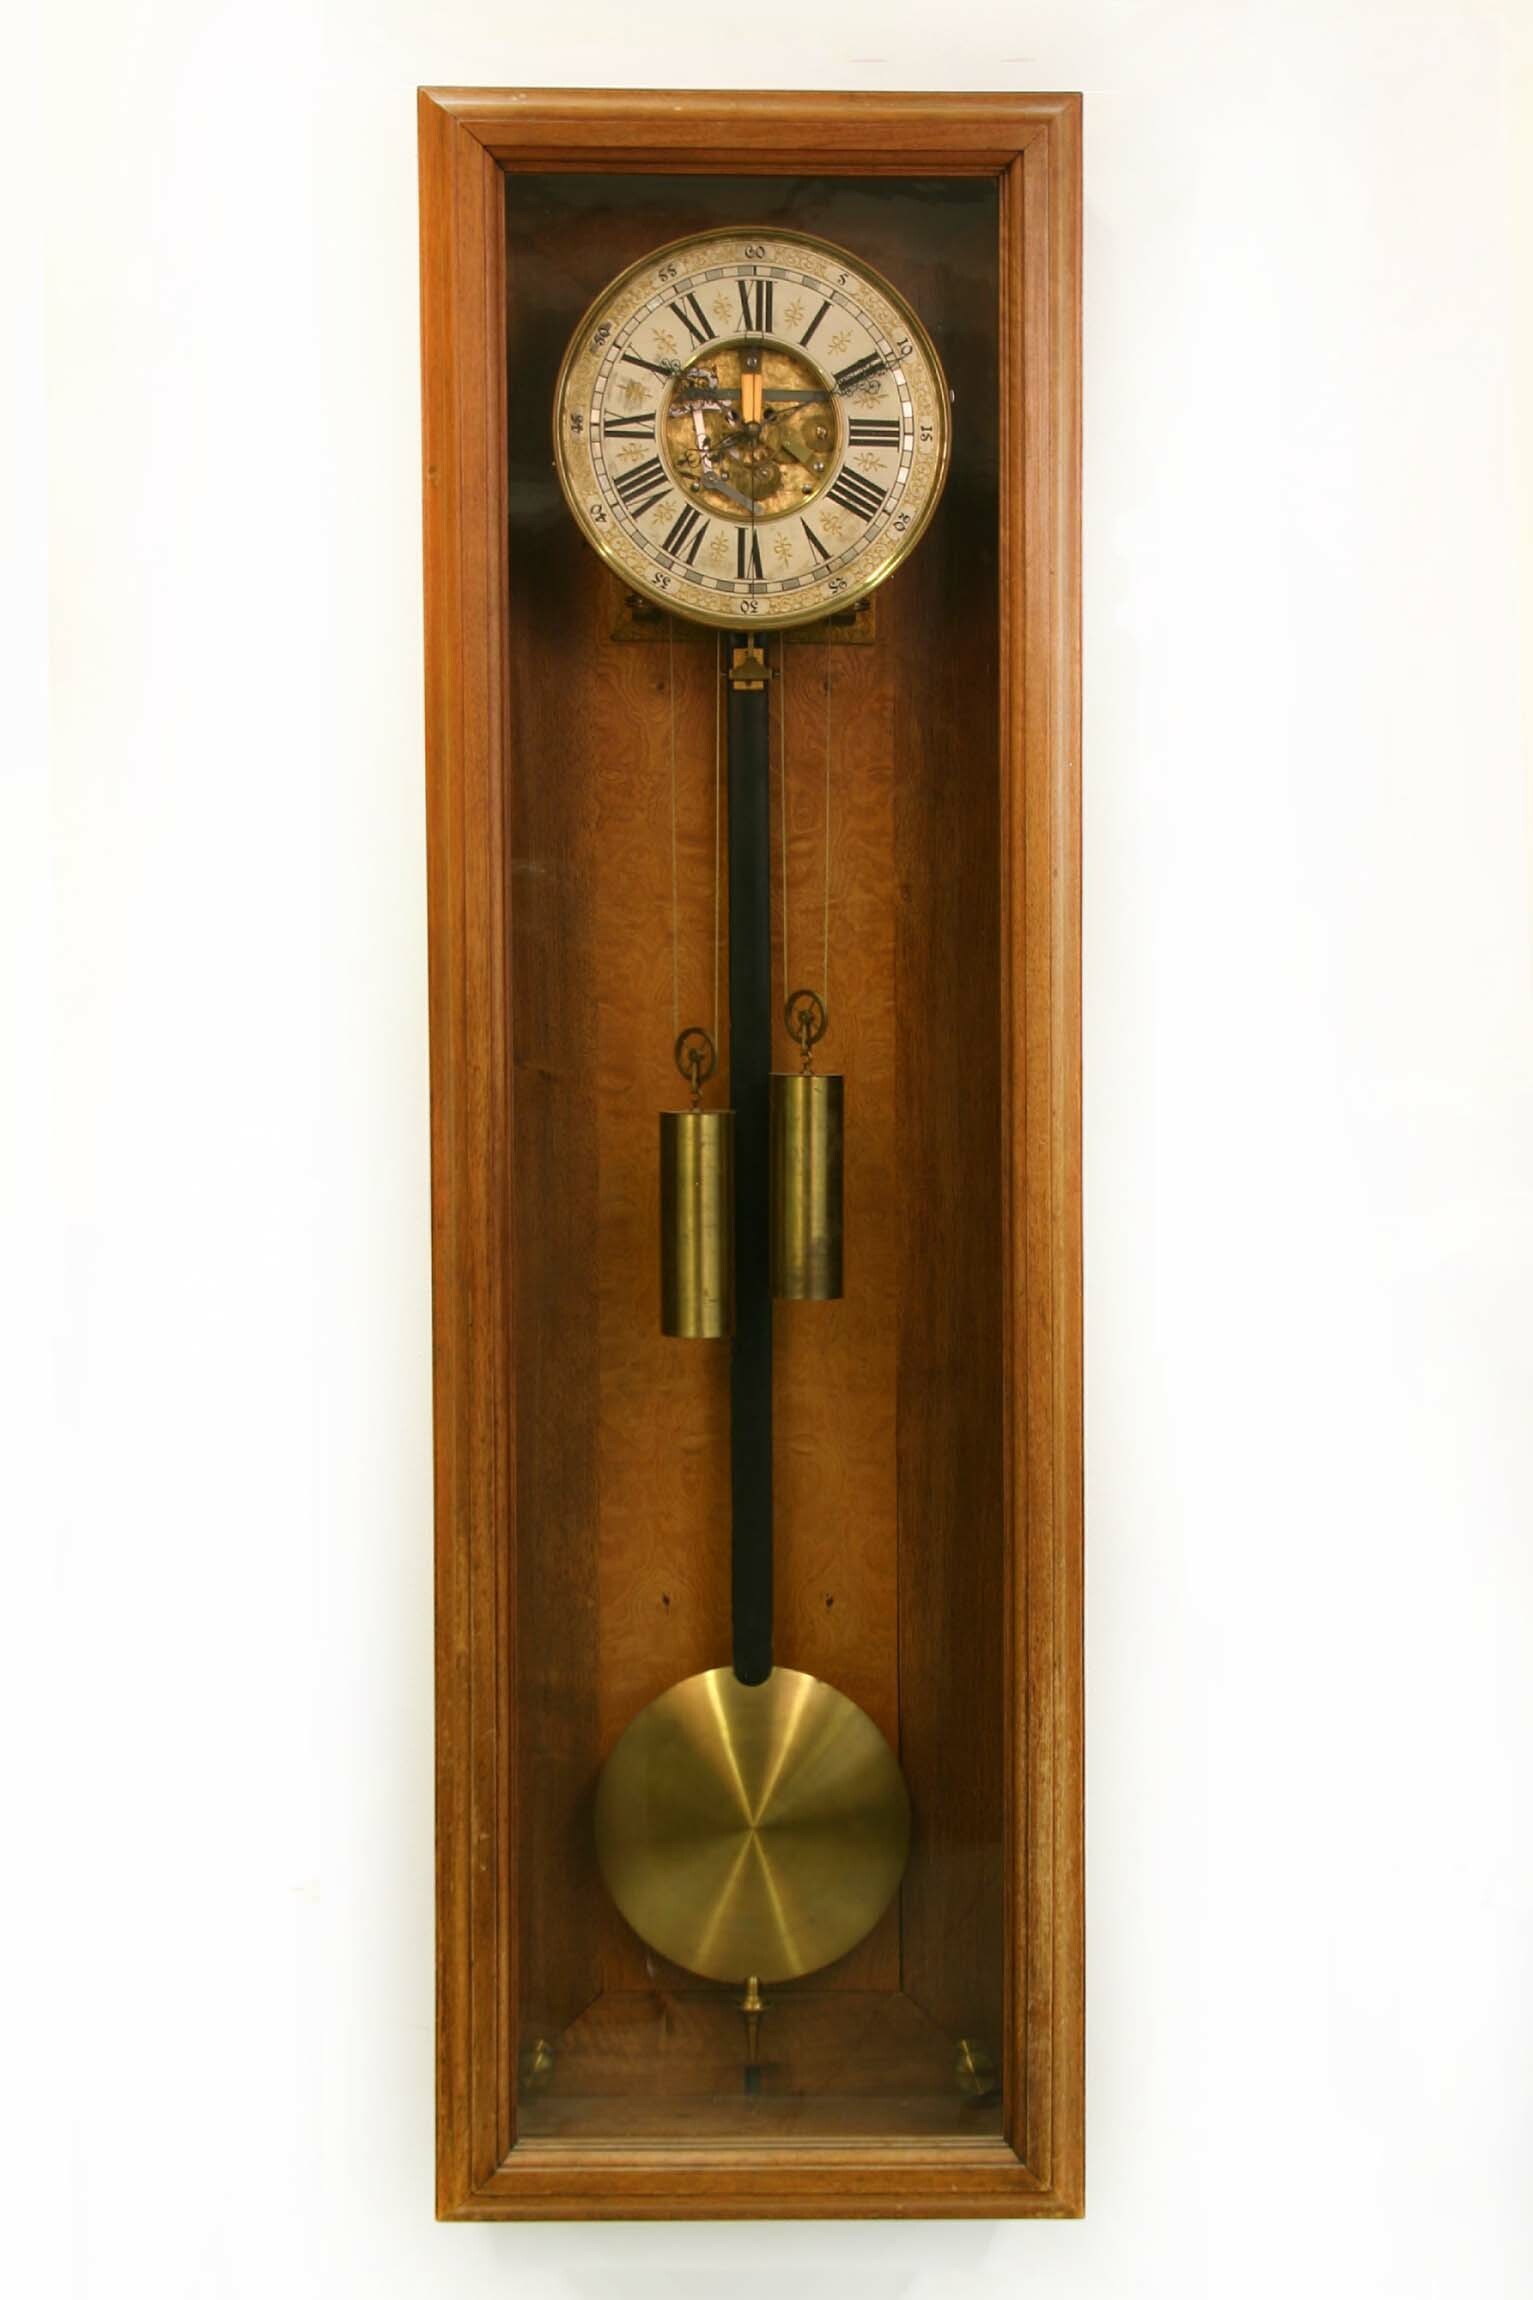 Regulator, Uhrmacherschule und Schnitzereischule Furtwangen, um 1900 (Deutsches Uhrenmuseum CC BY-SA)